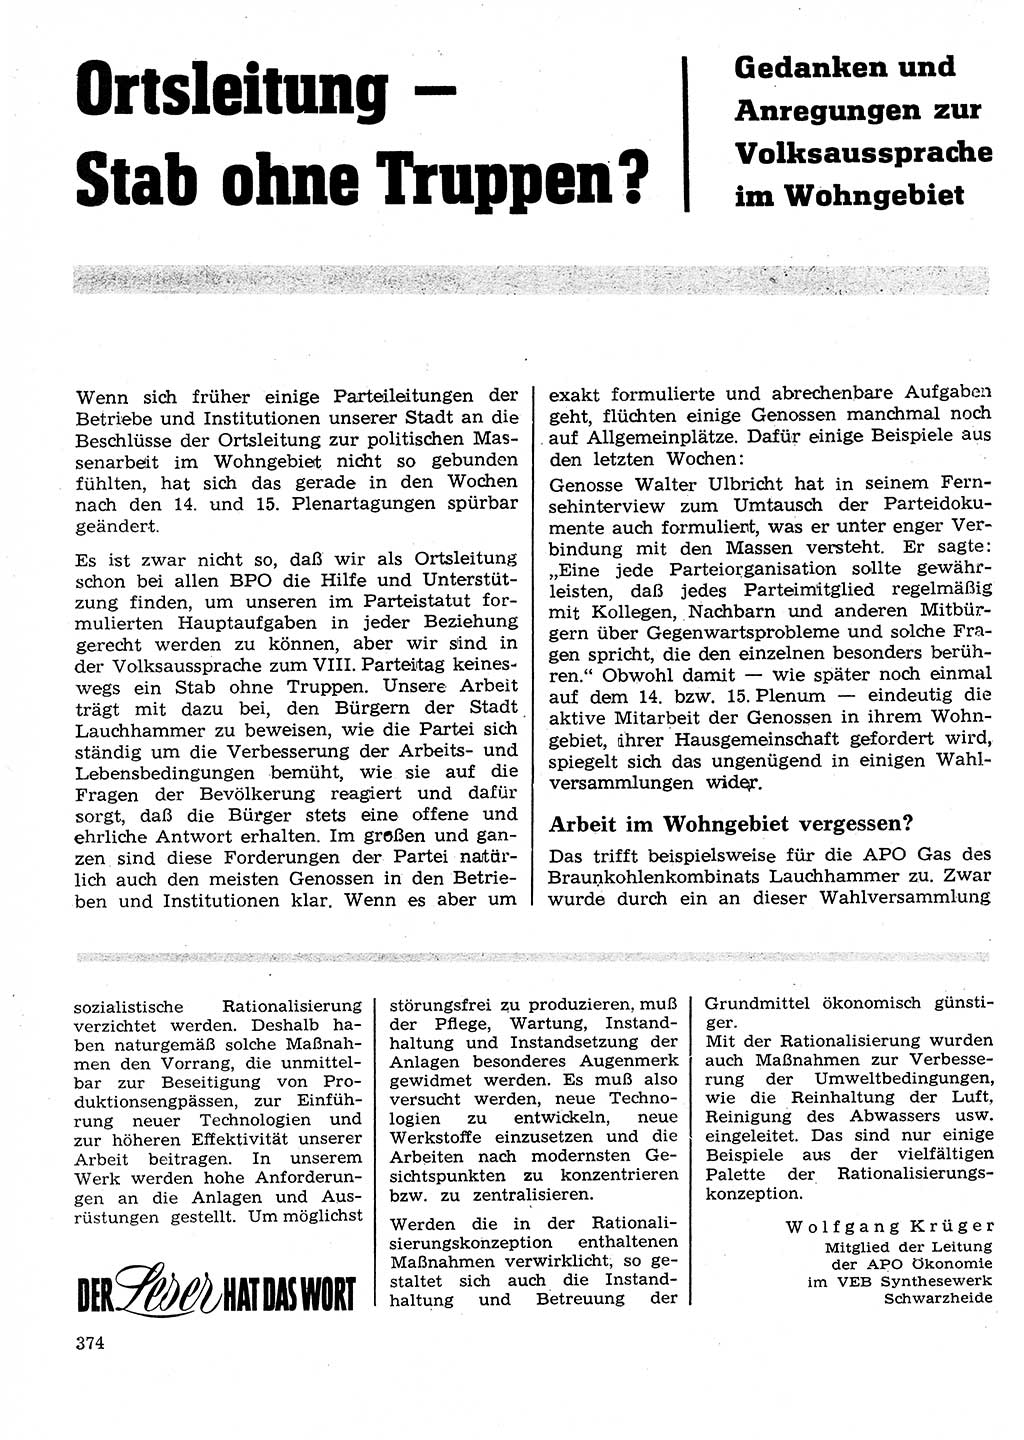 Neuer Weg (NW), Organ des Zentralkomitees (ZK) der SED (Sozialistische Einheitspartei Deutschlands) für Fragen des Parteilebens, 26. Jahrgang [Deutsche Demokratische Republik (DDR)] 1971, Seite 374 (NW ZK SED DDR 1971, S. 374)